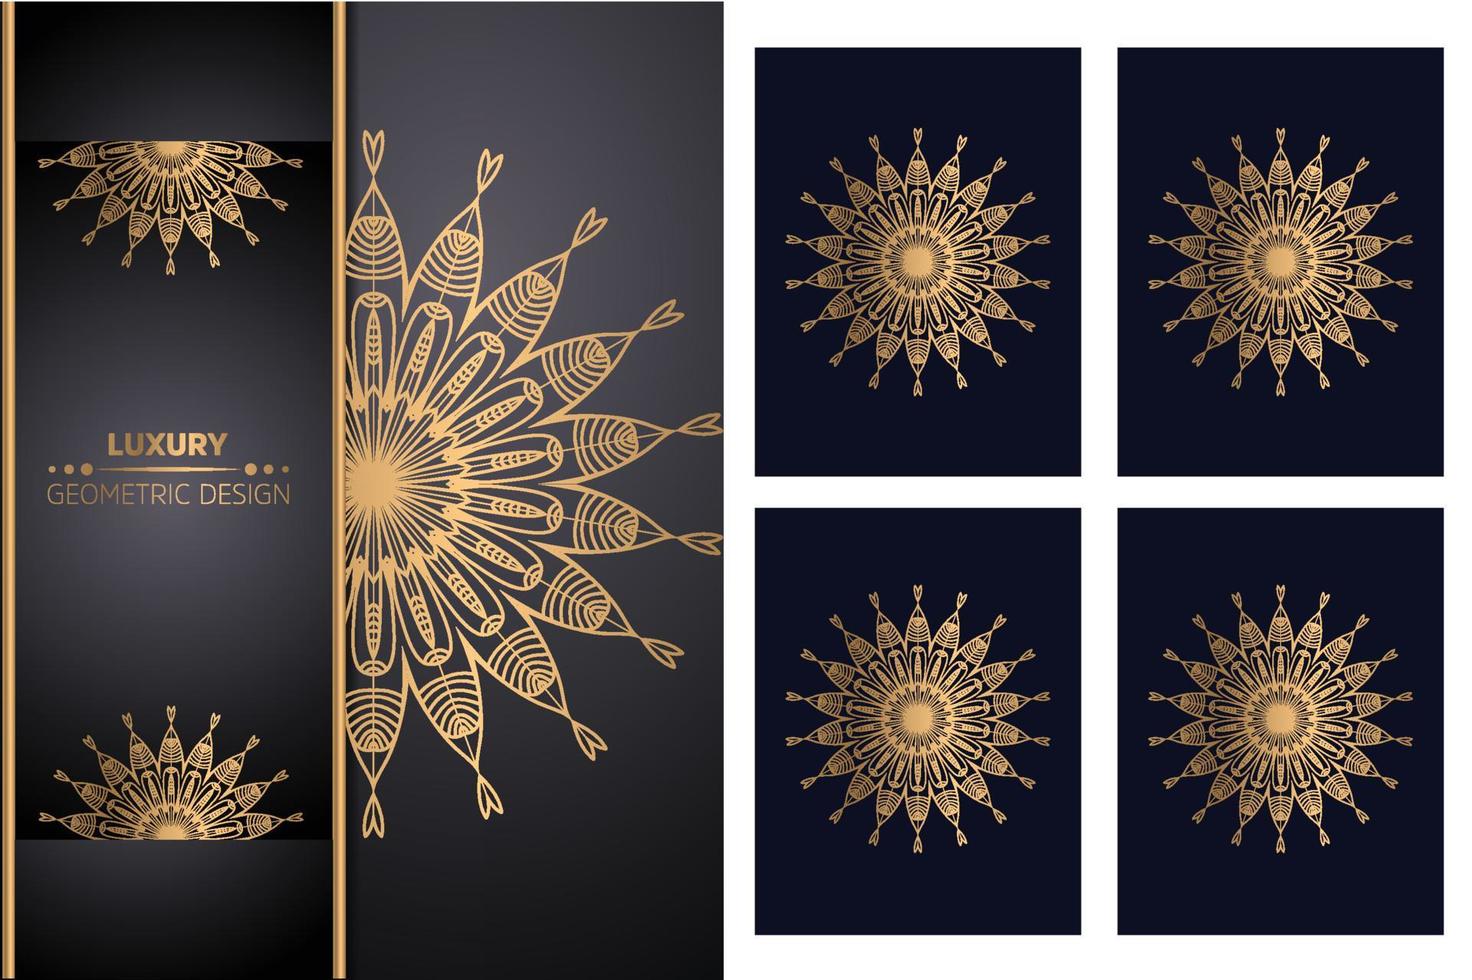 Luxuriöser dekorativer Mandala-Design-Hintergrund Mandala-Muster-Malbuch-Kunst-Tapeten-Design, Fliesenmuster, Grußkarte, Aufkleber, Spitze und Tätowierung. Dekoration für die Innenarchitektur vektor